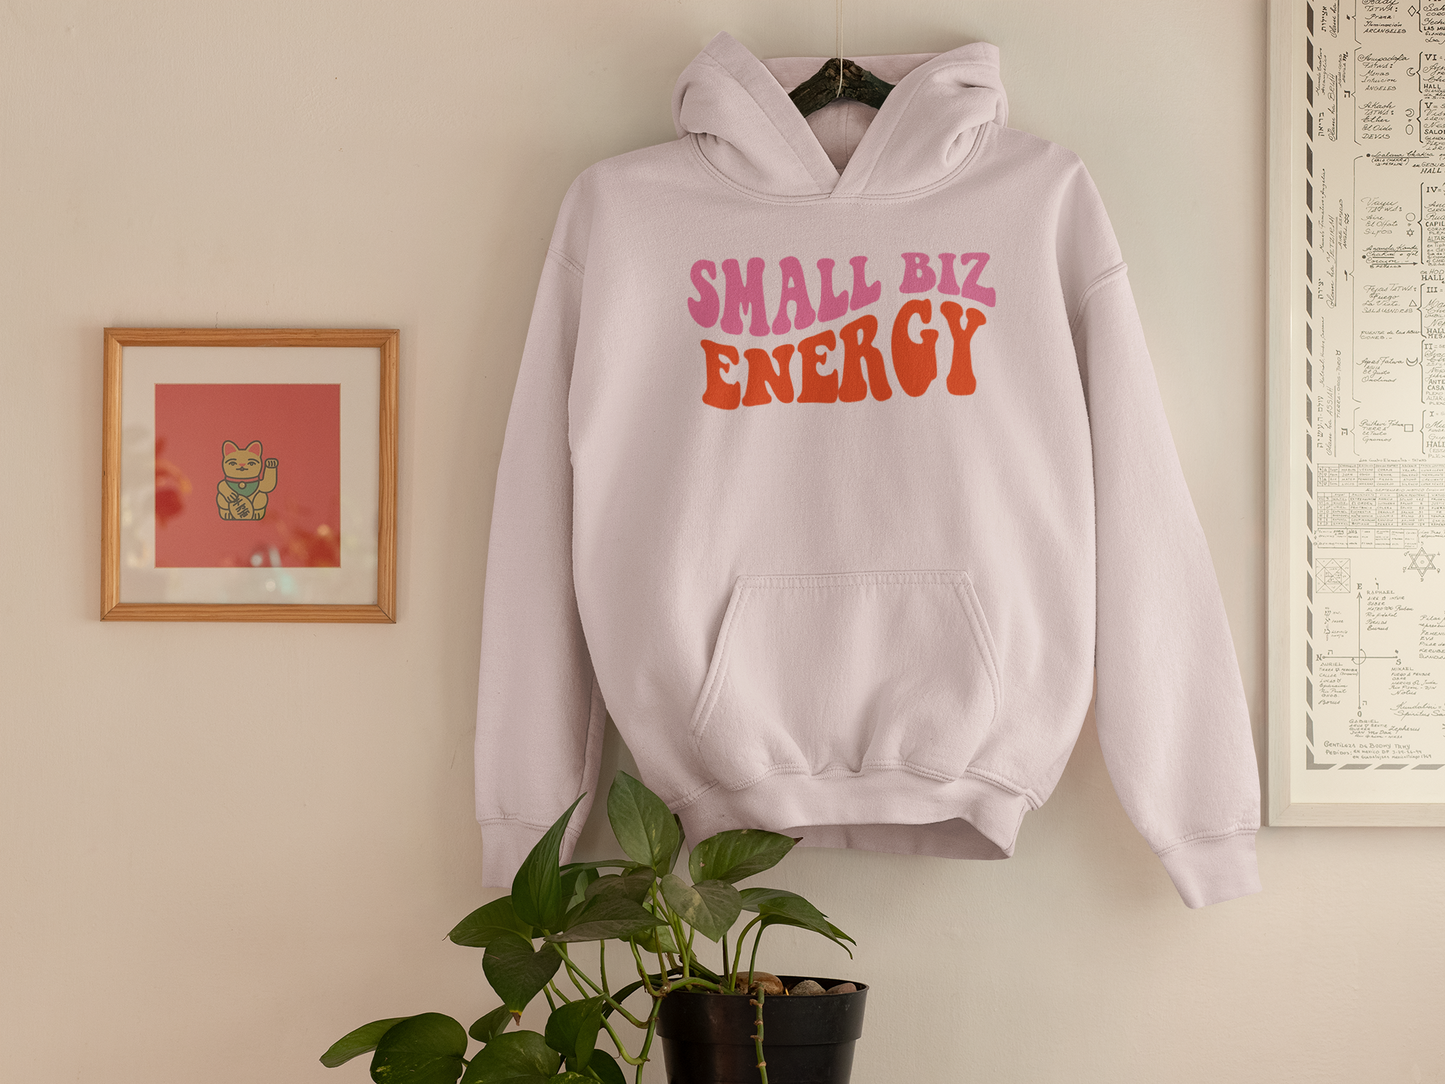 Small Biz Energy SVG Digital Download Design File